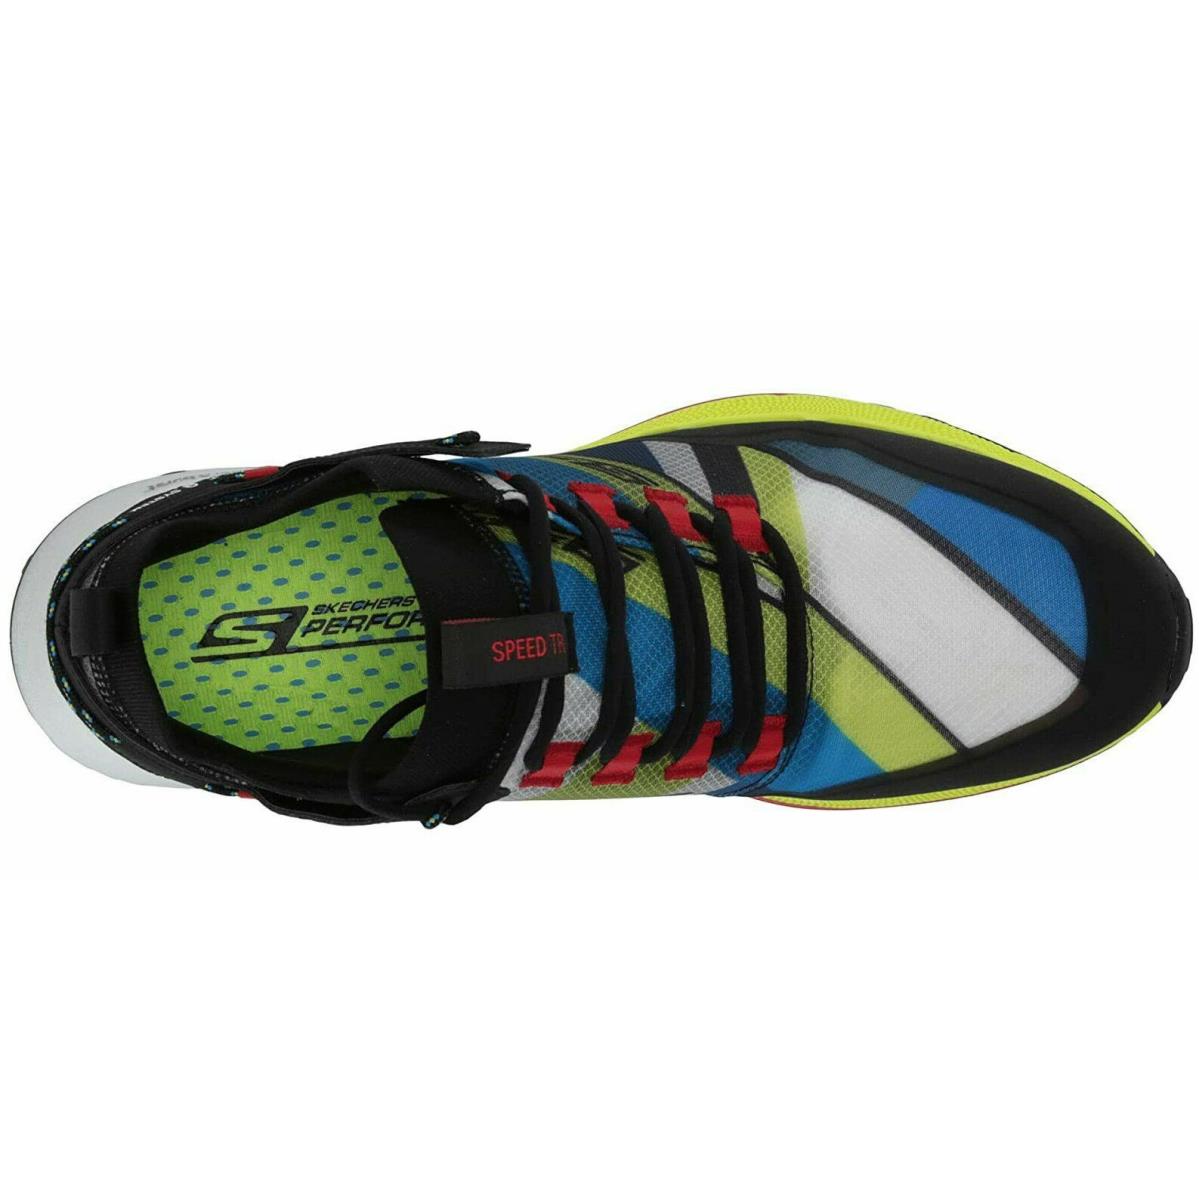 Skechers shoes Run Speed Trail - MULTI 6